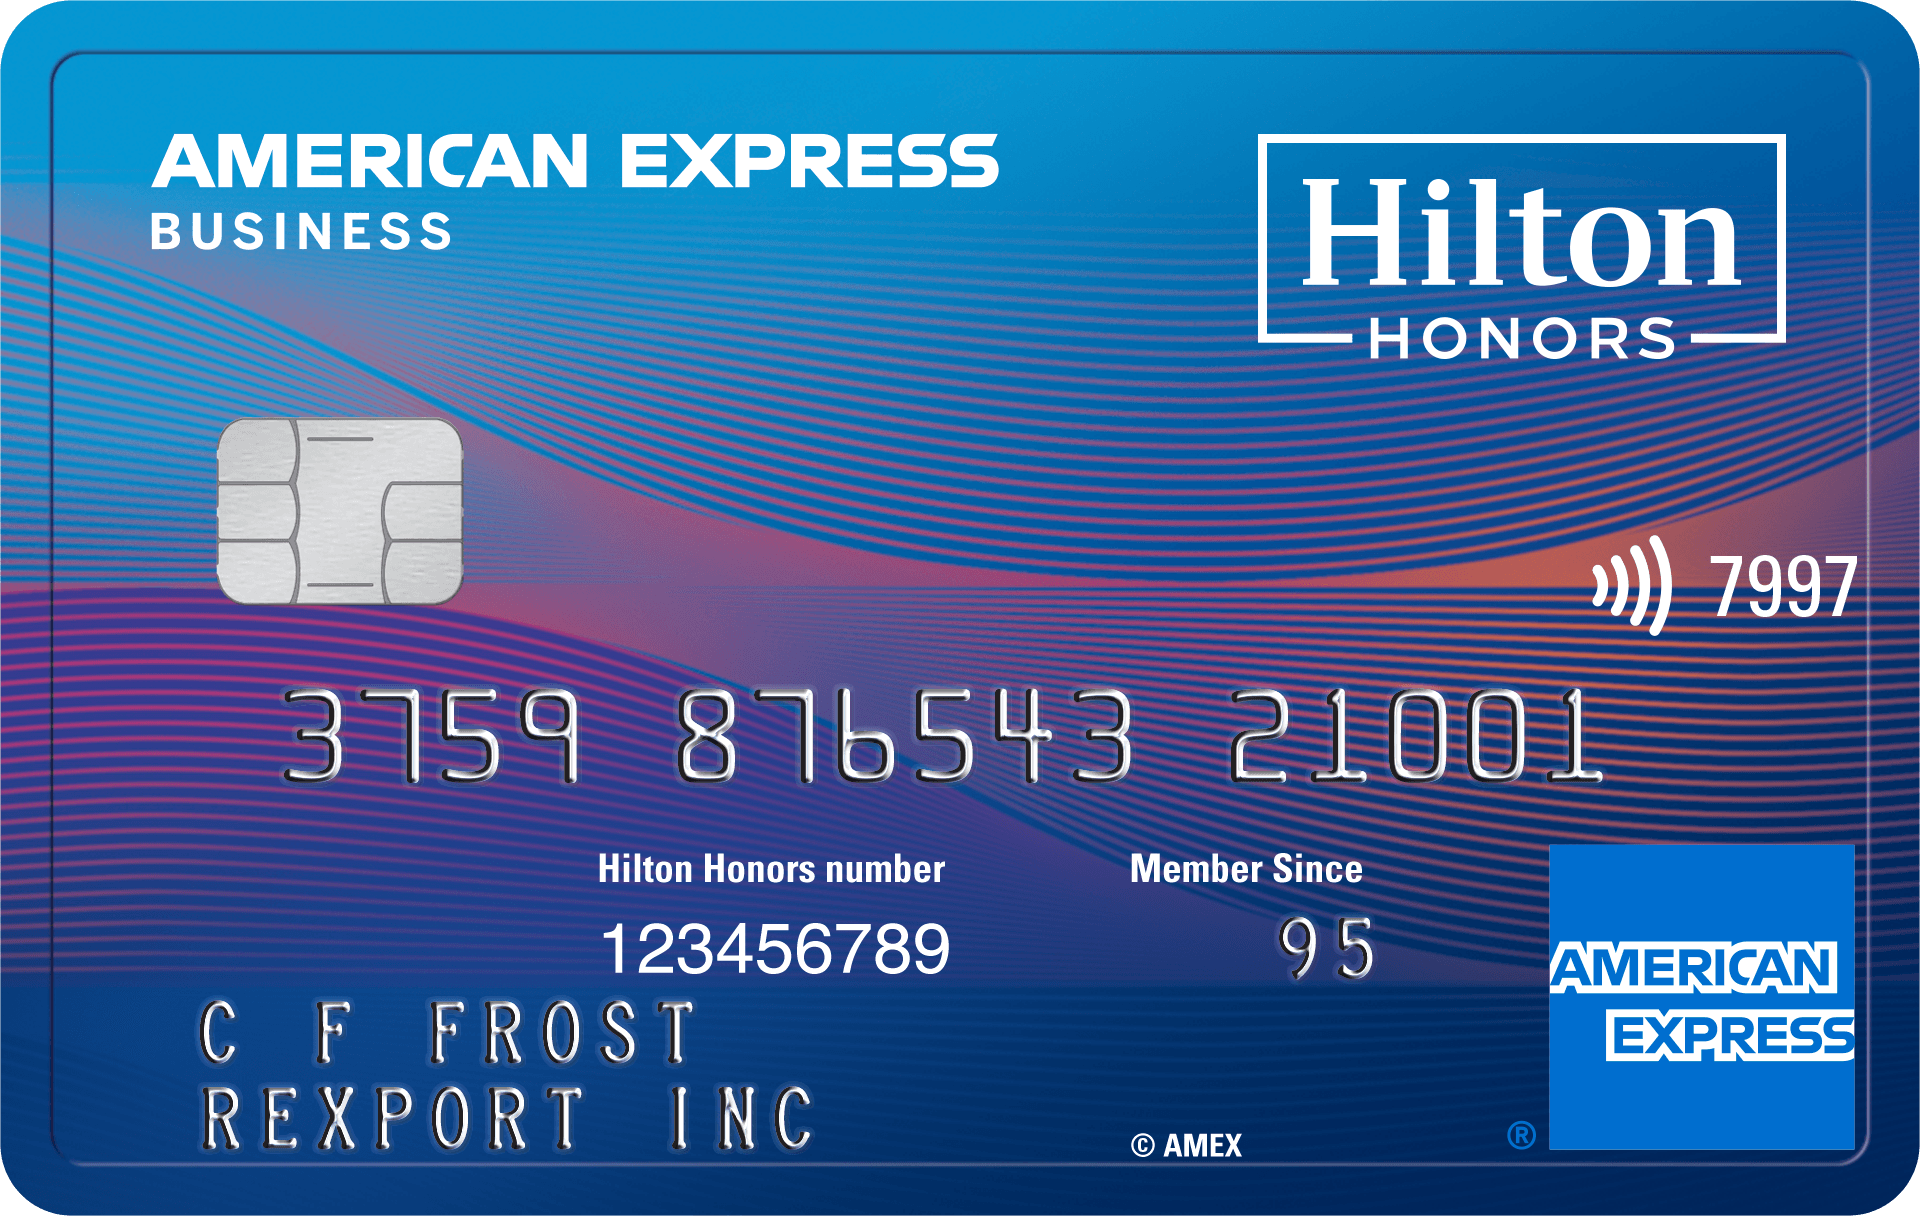 La Hilton Honors Business Card, dotée d'une puce, offre le paiement sans contact